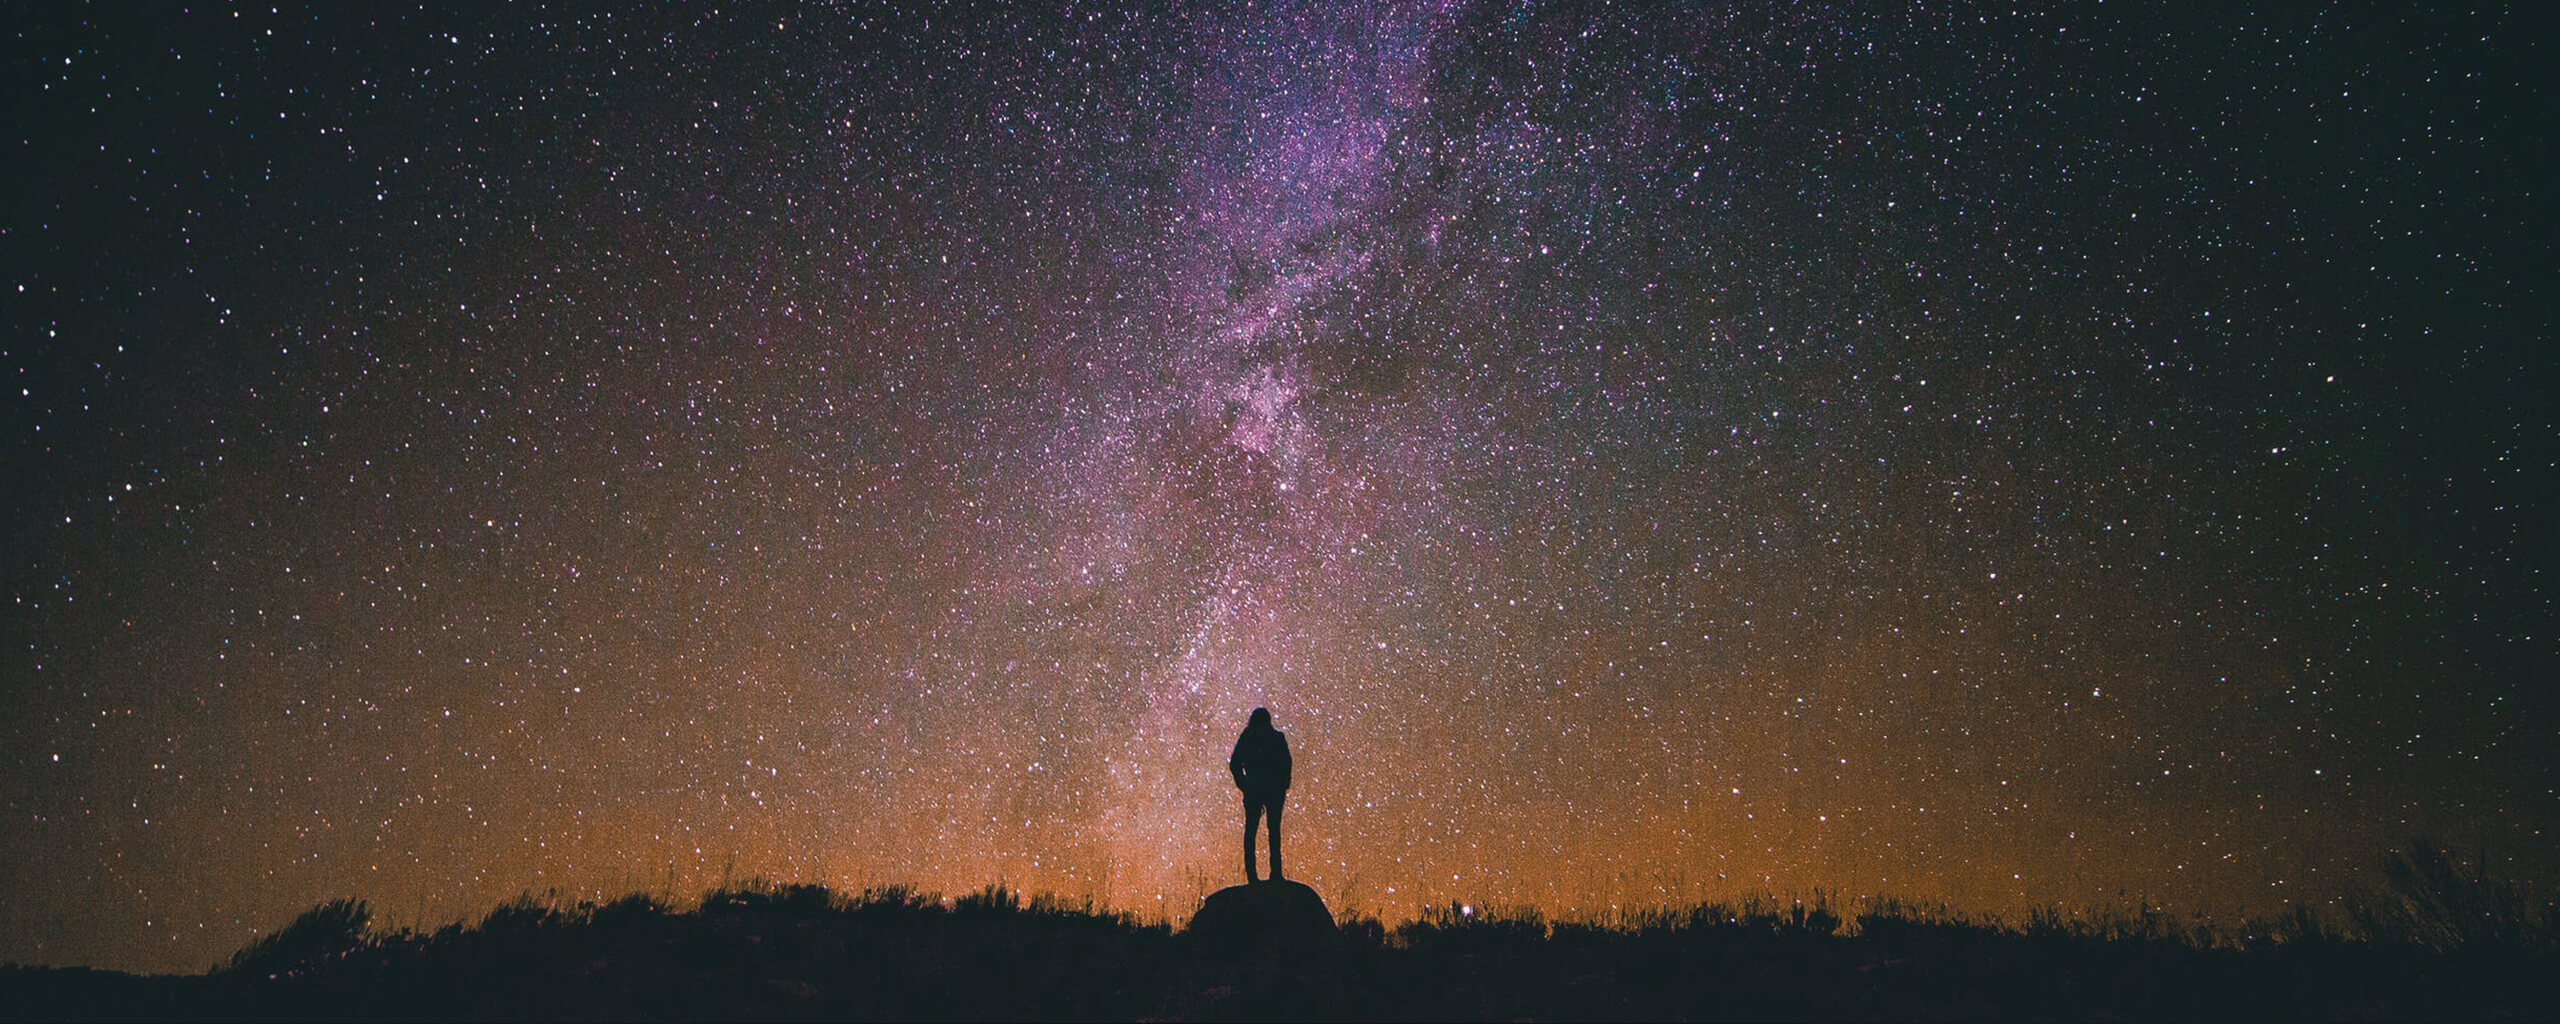 man on a starry night sky background